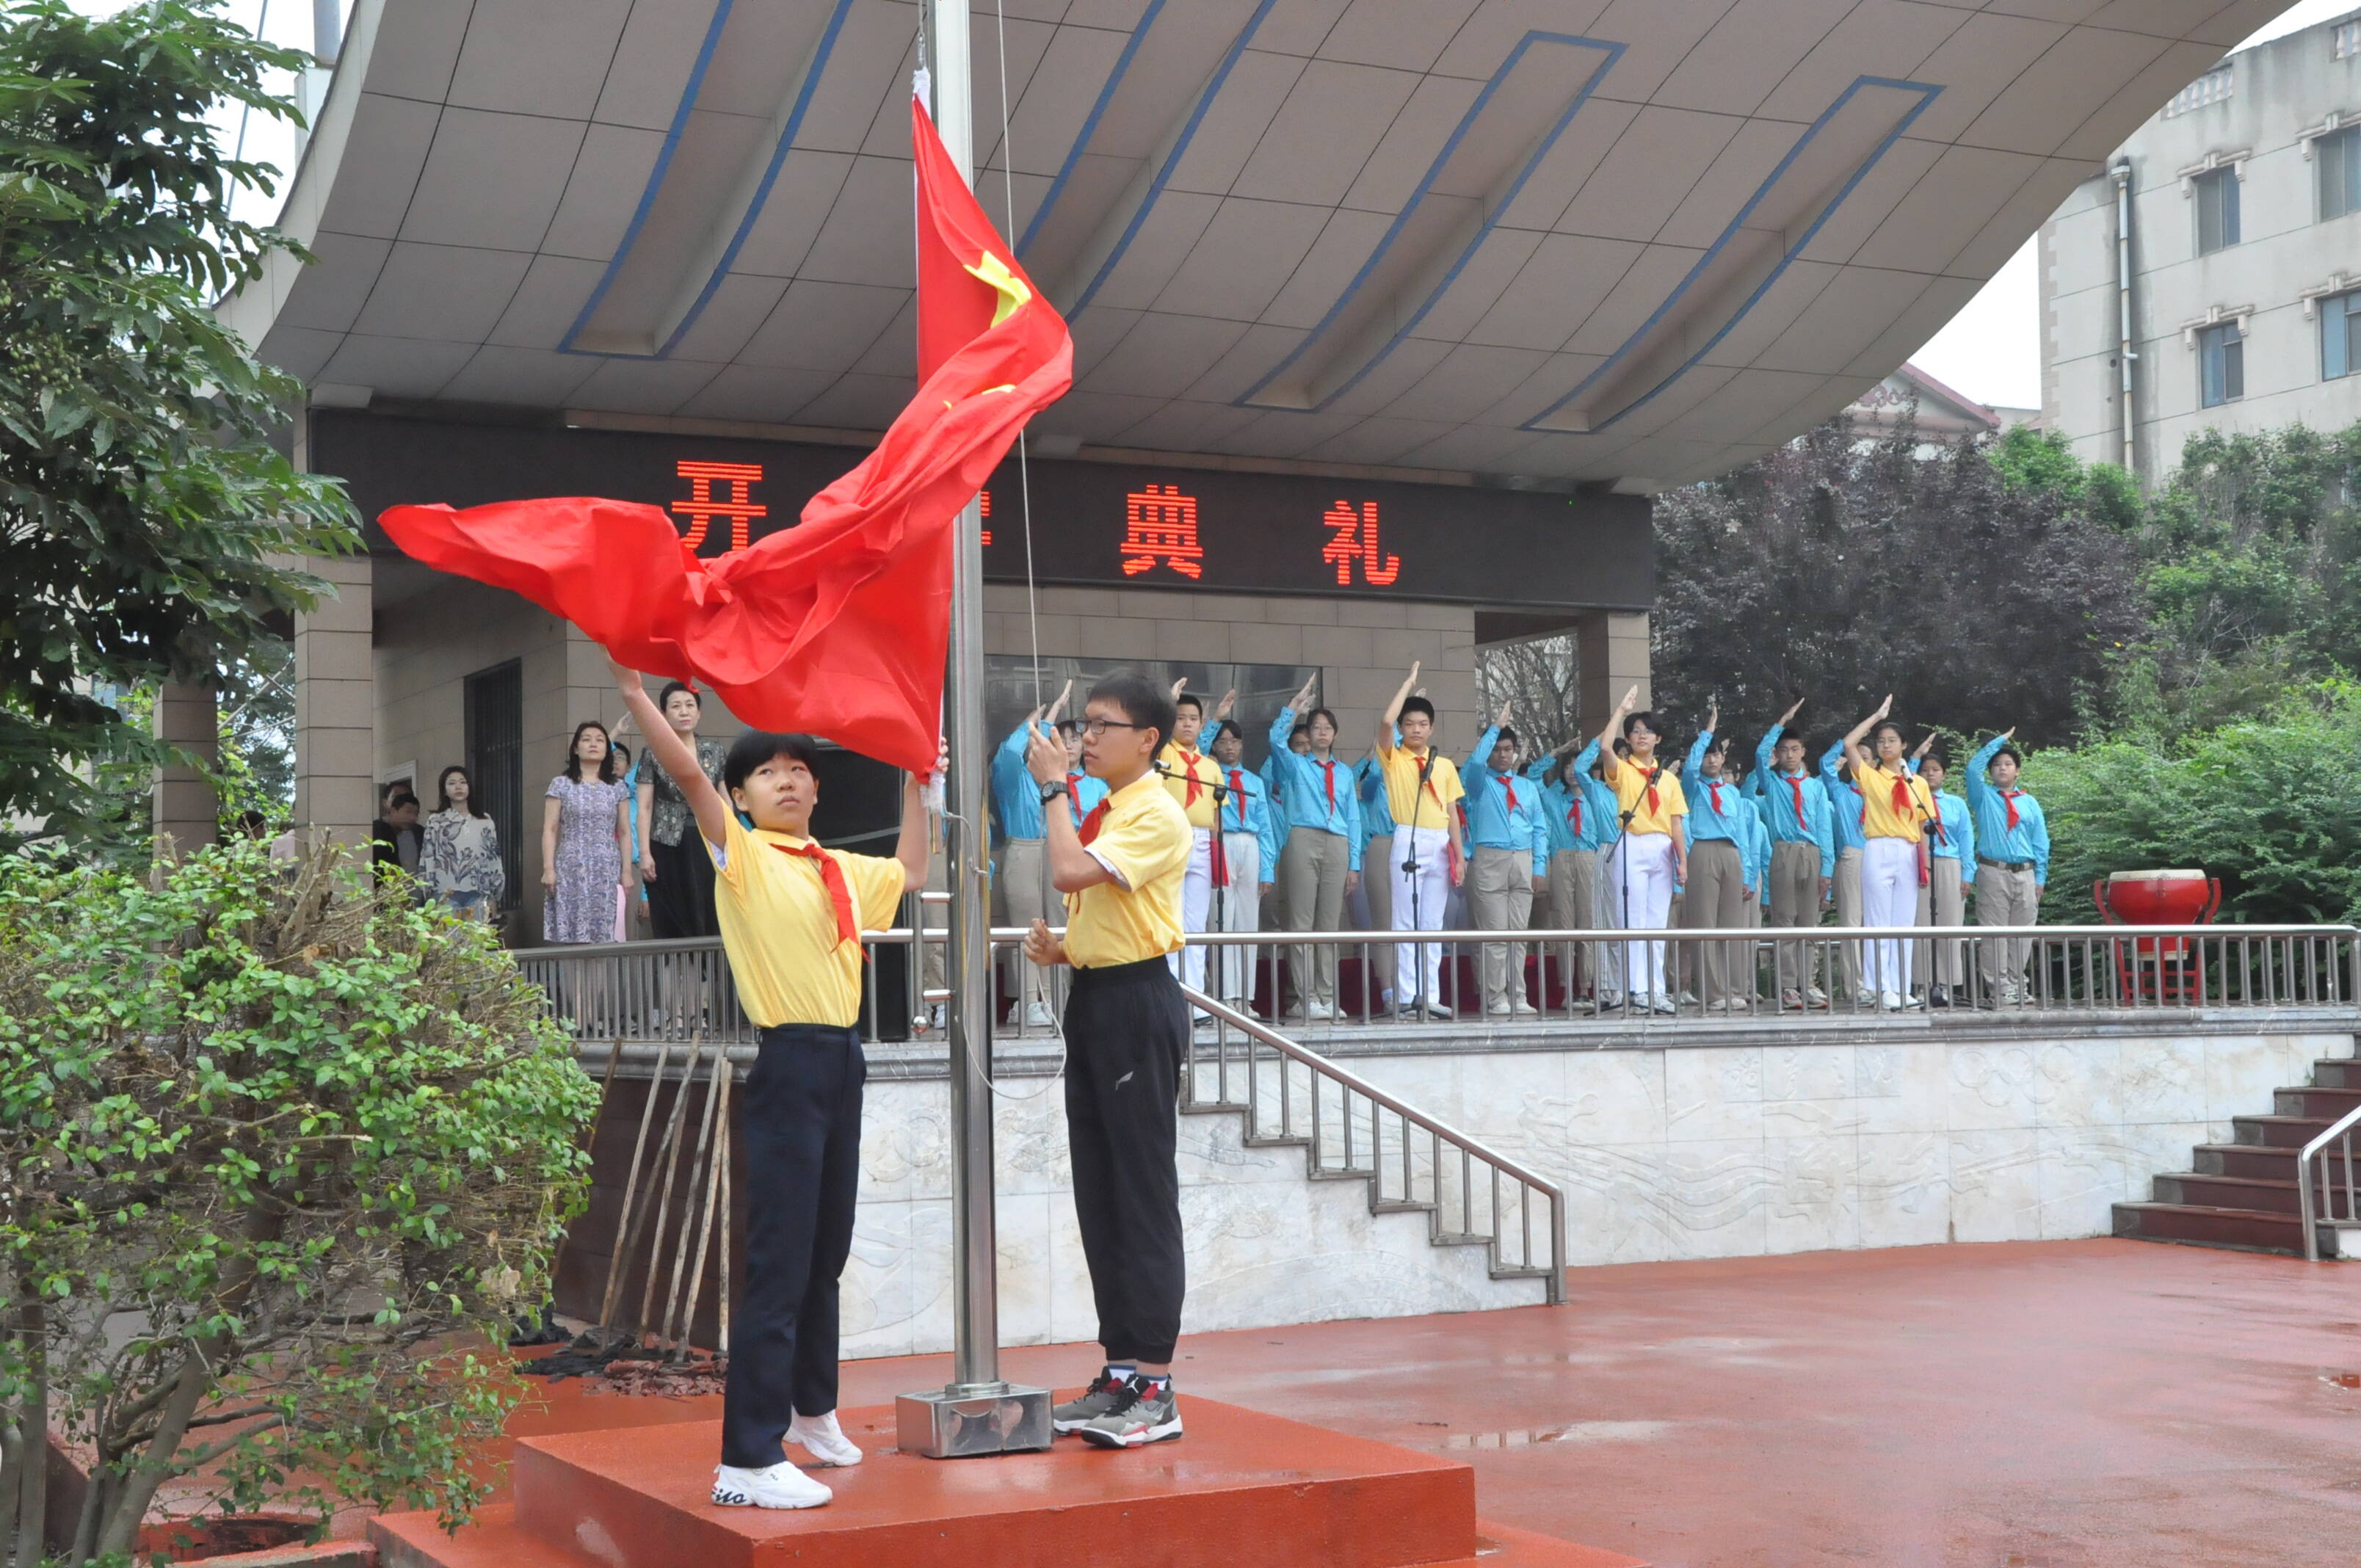 同升国旗 共唱国歌 济南学子开学第一天向祖国宣誓